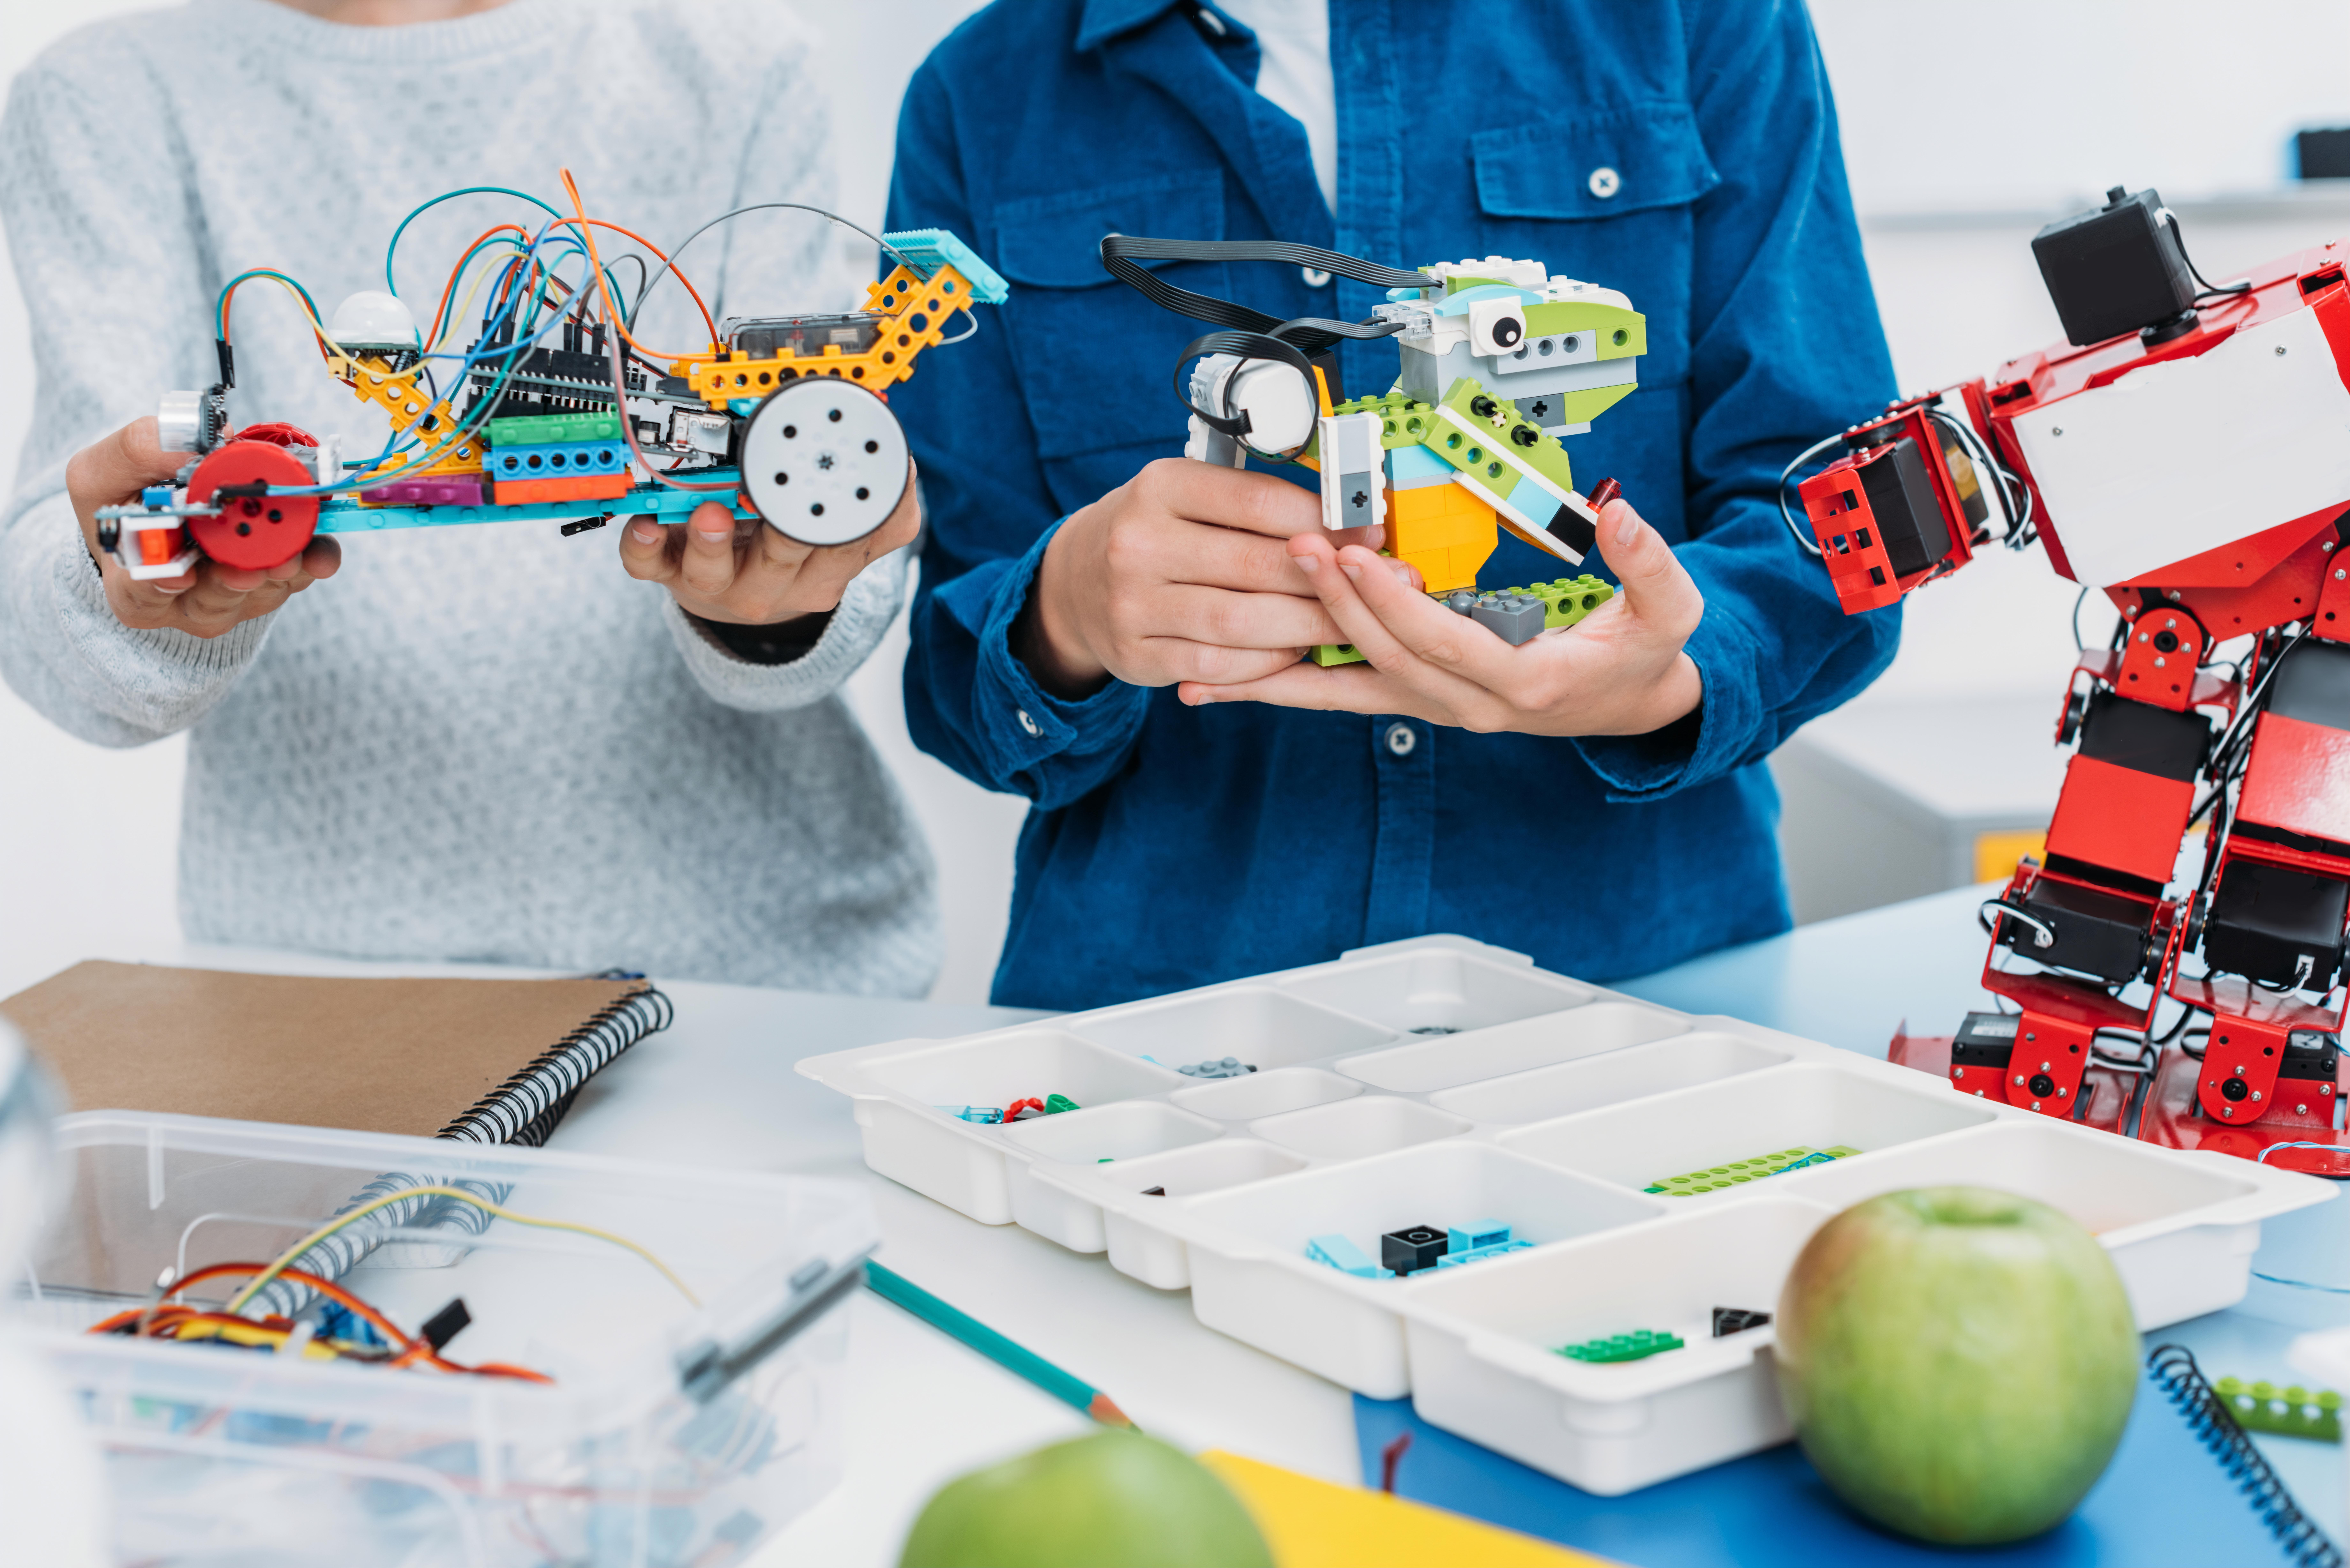 Zwei Kinder halten Roboteraufbauten aus Bausteinen in den Händen. Im Vordergrund ist ein Sortierkasten zu sehen.